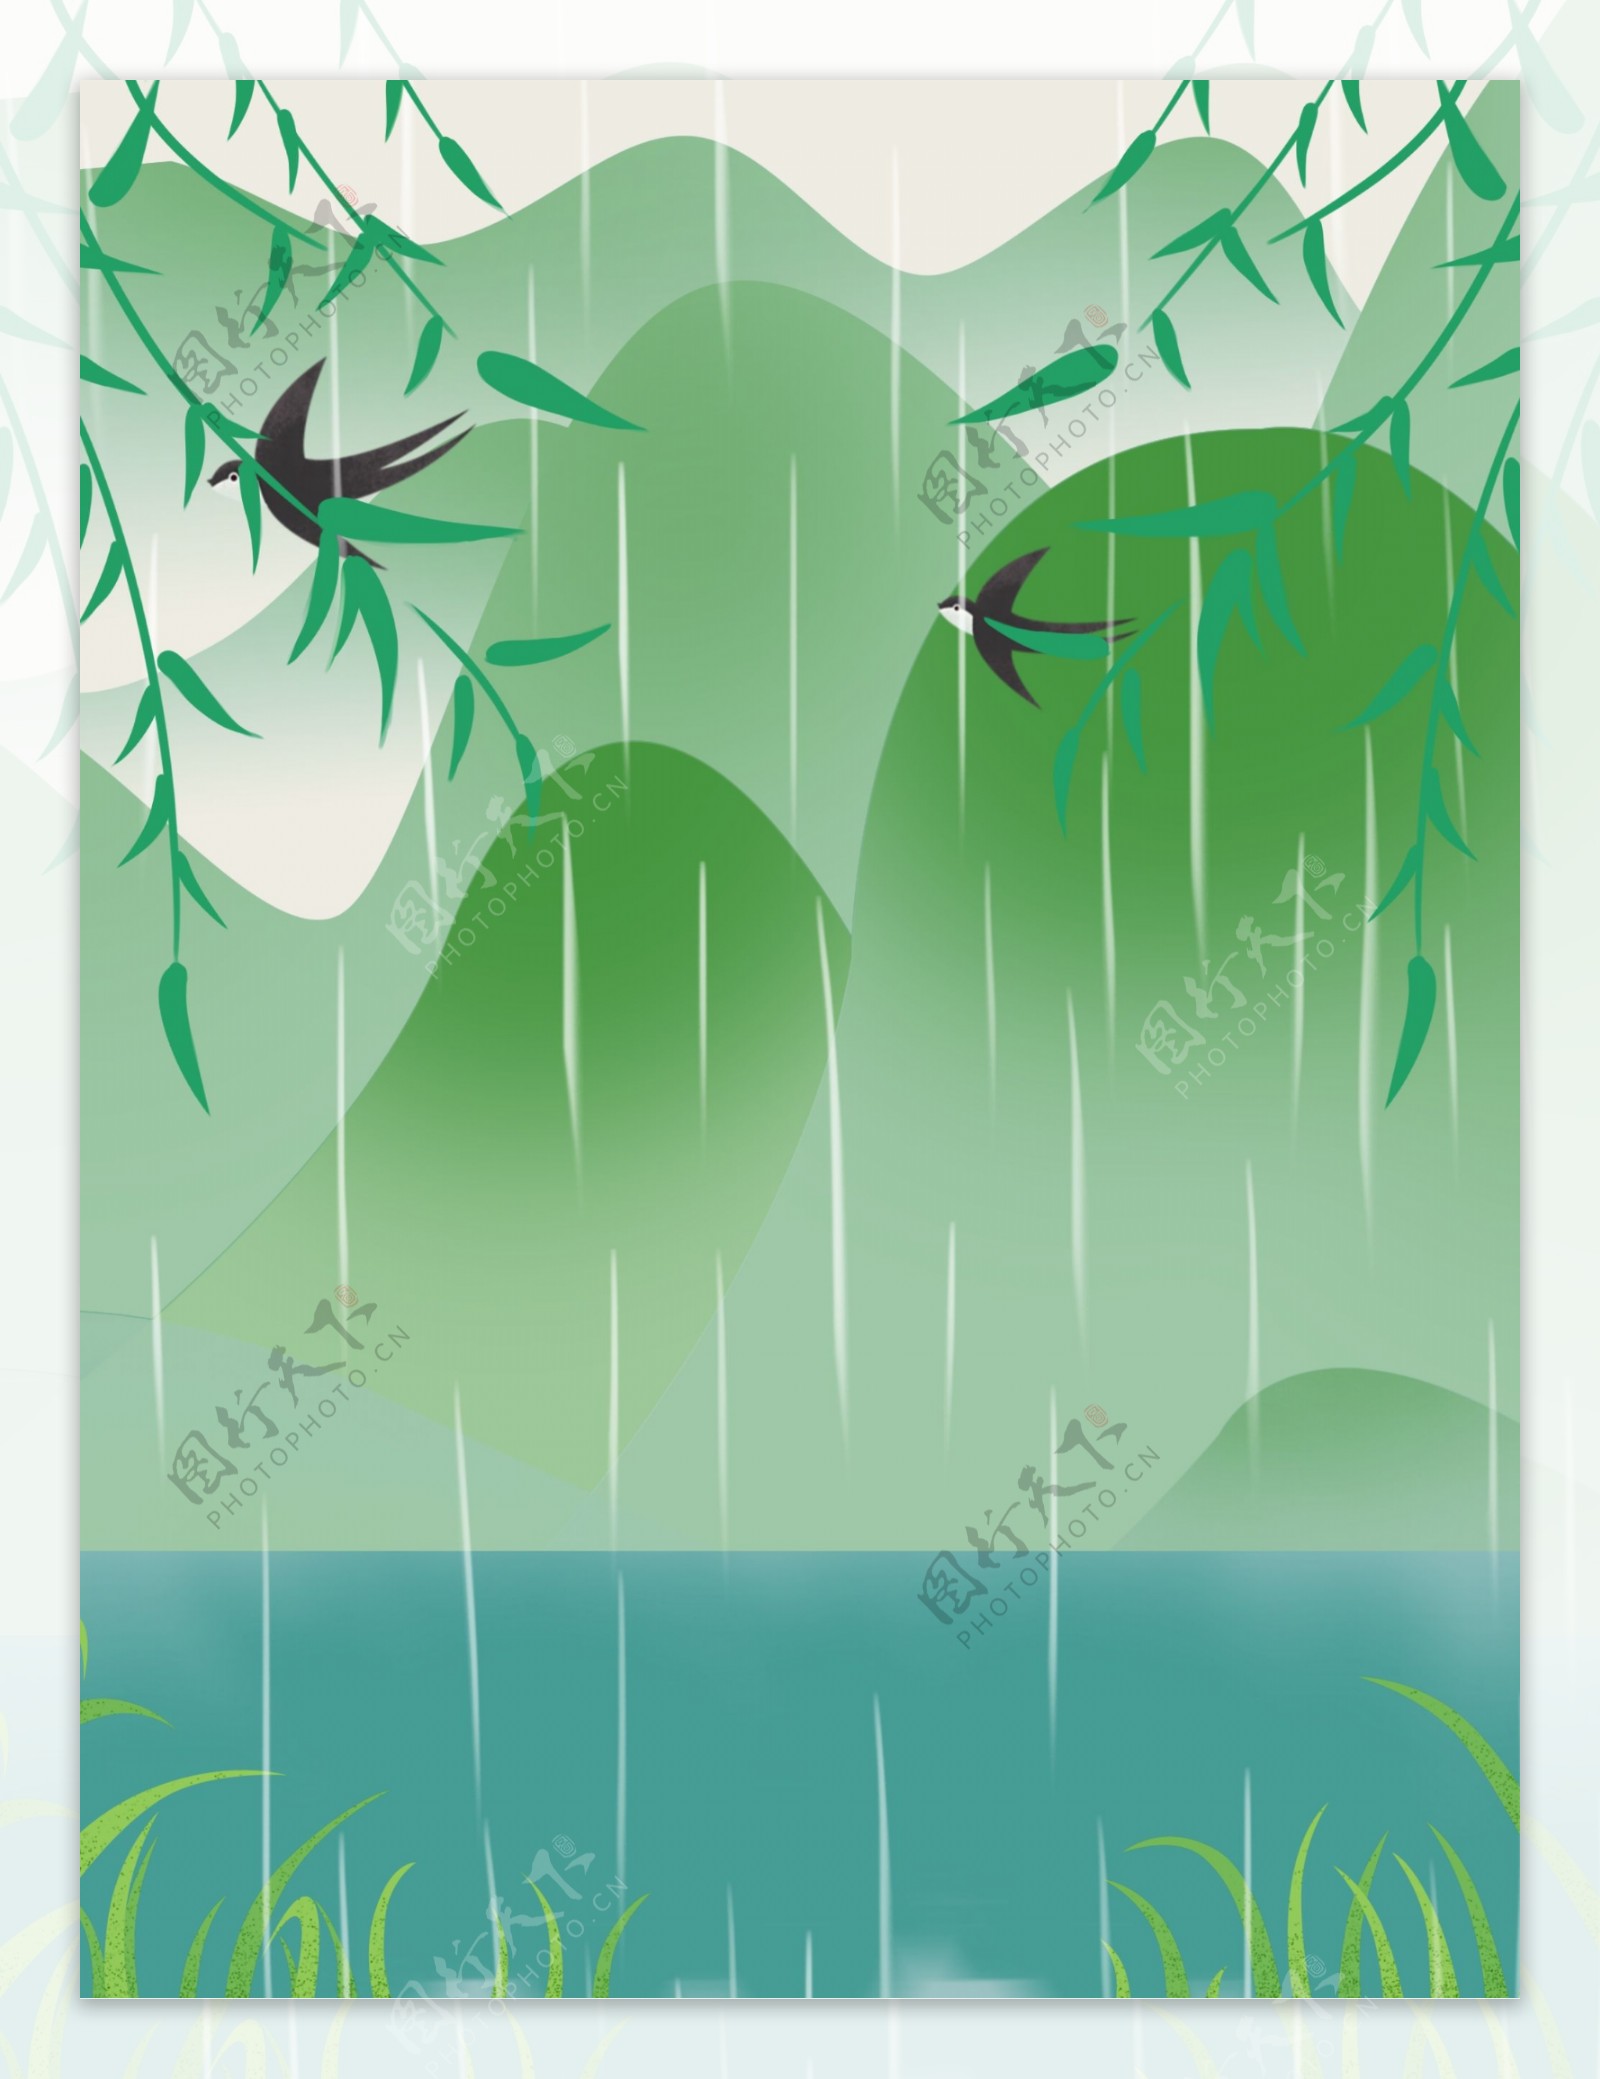 手绘春季谷雨柳条燕子背景设计